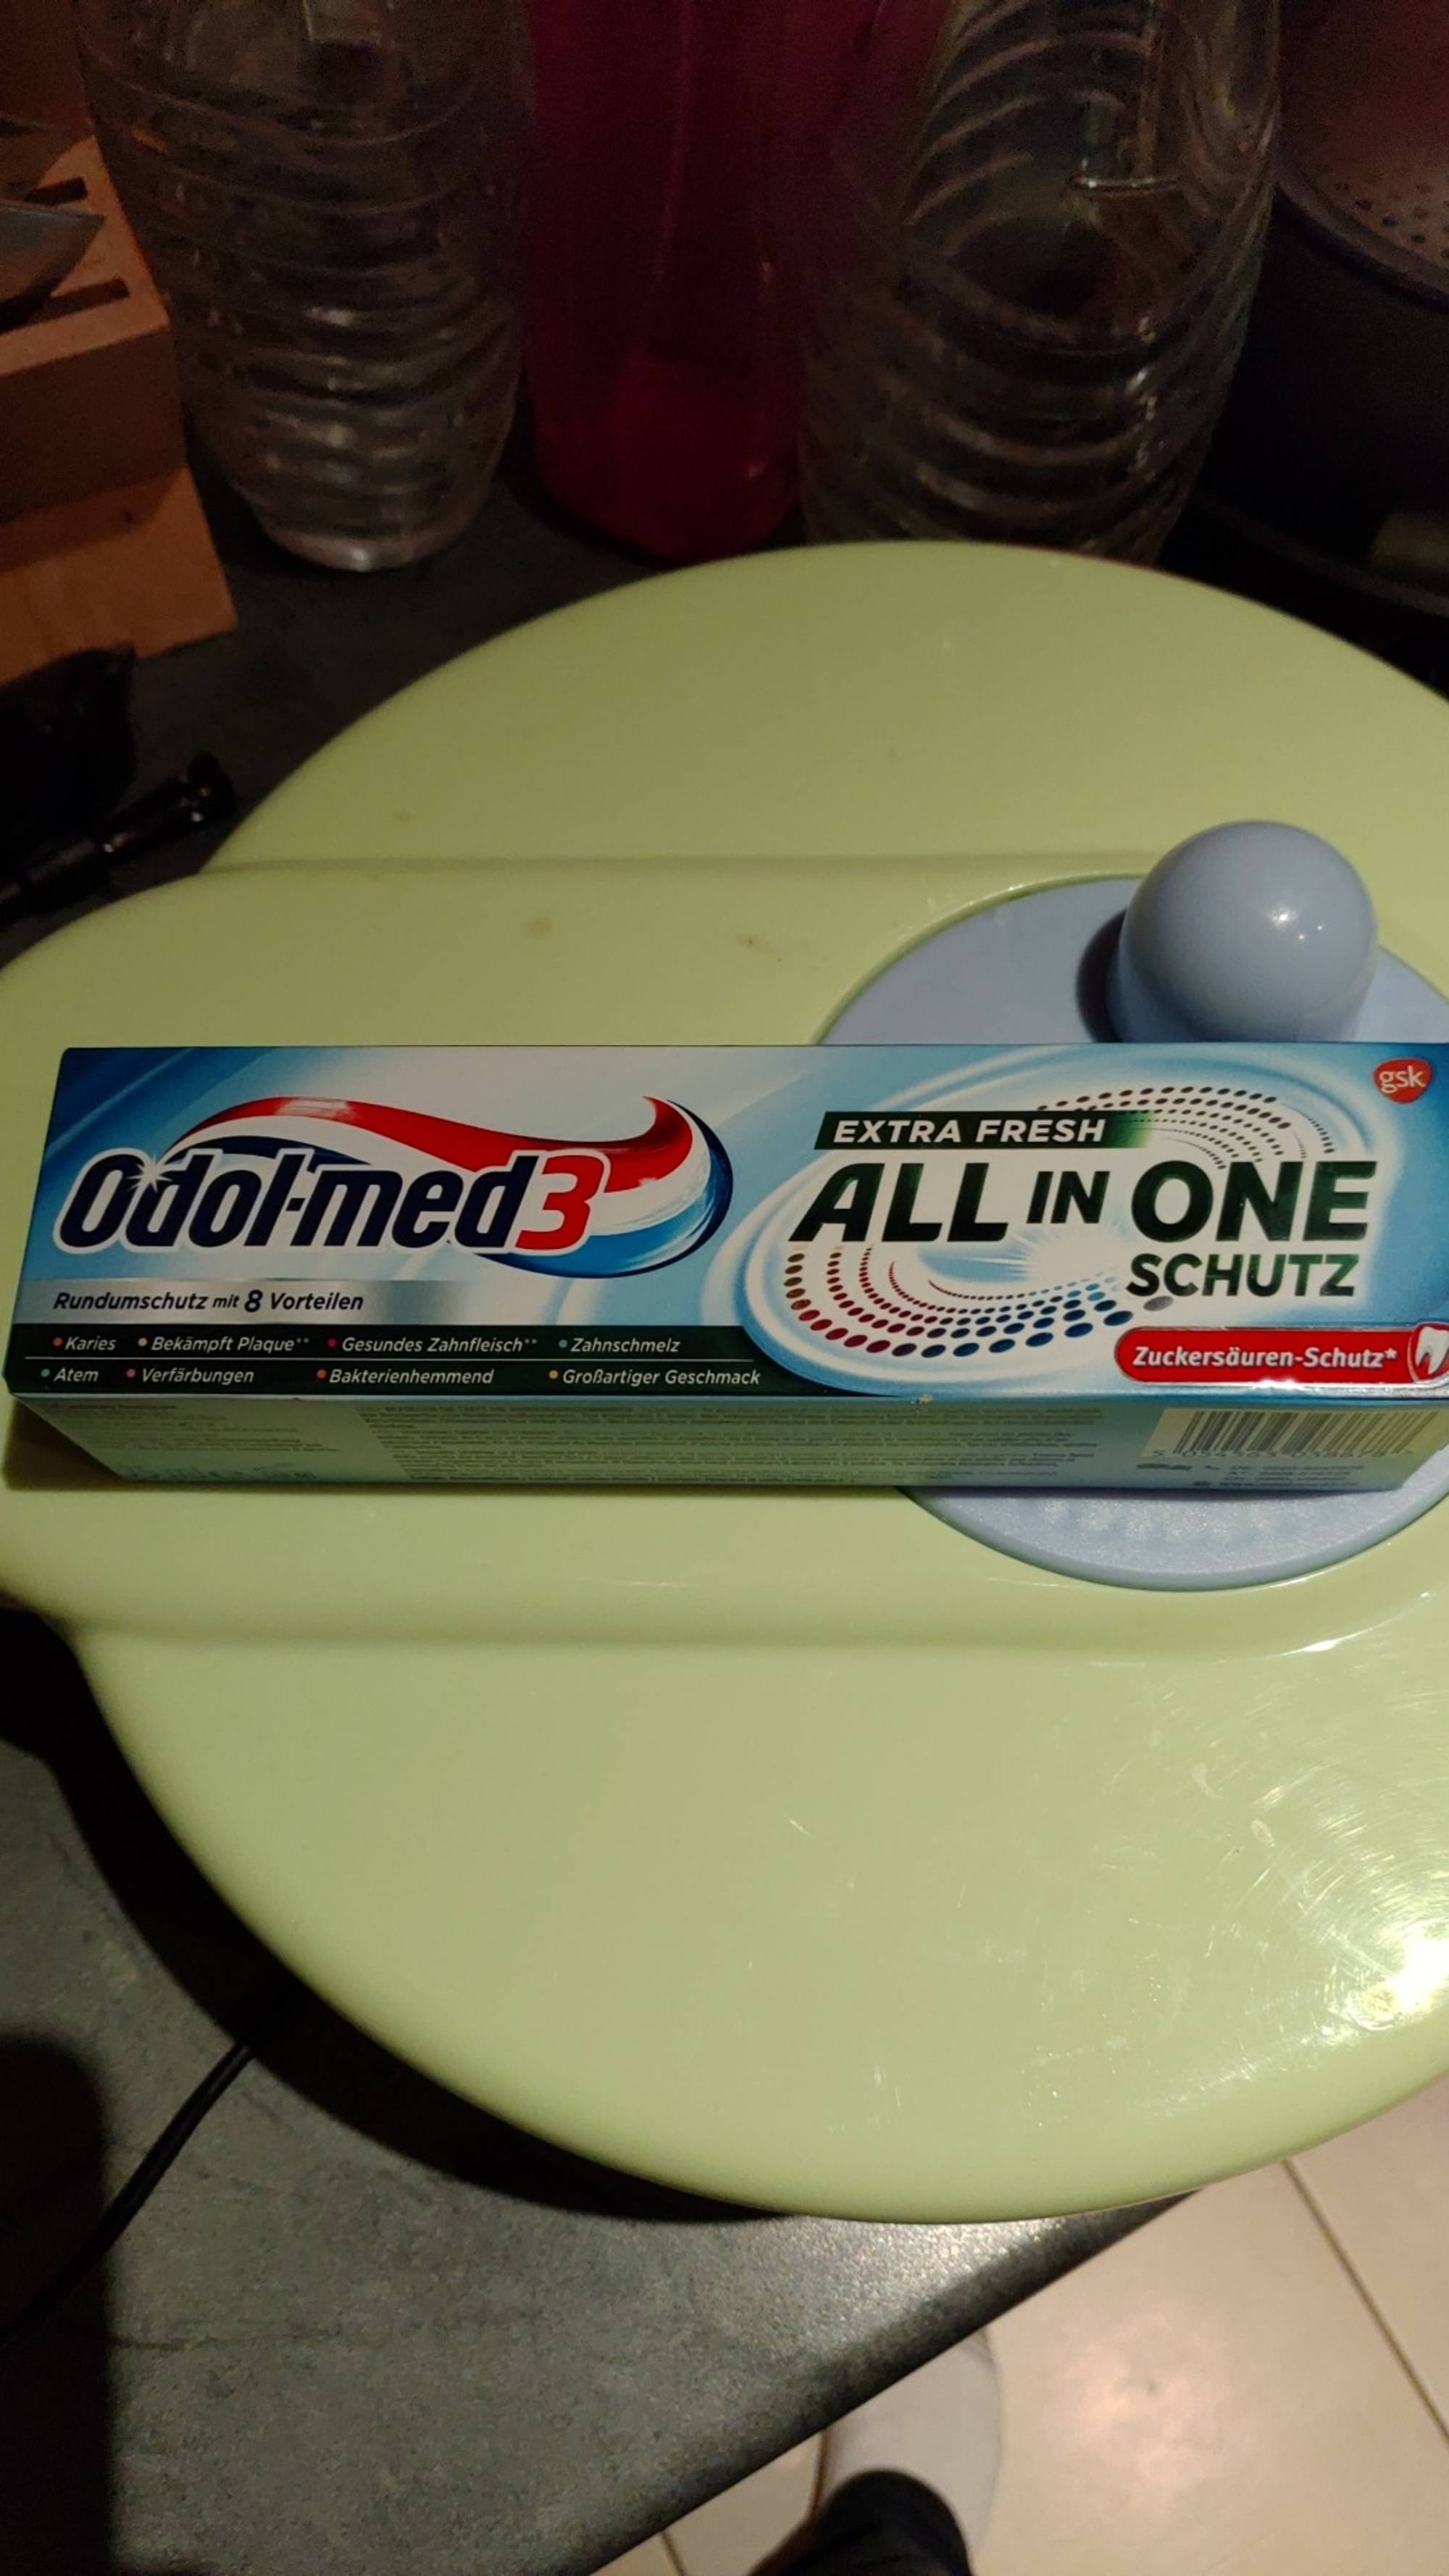 ODOL-MED3 - All in one schutz - Dentifrice